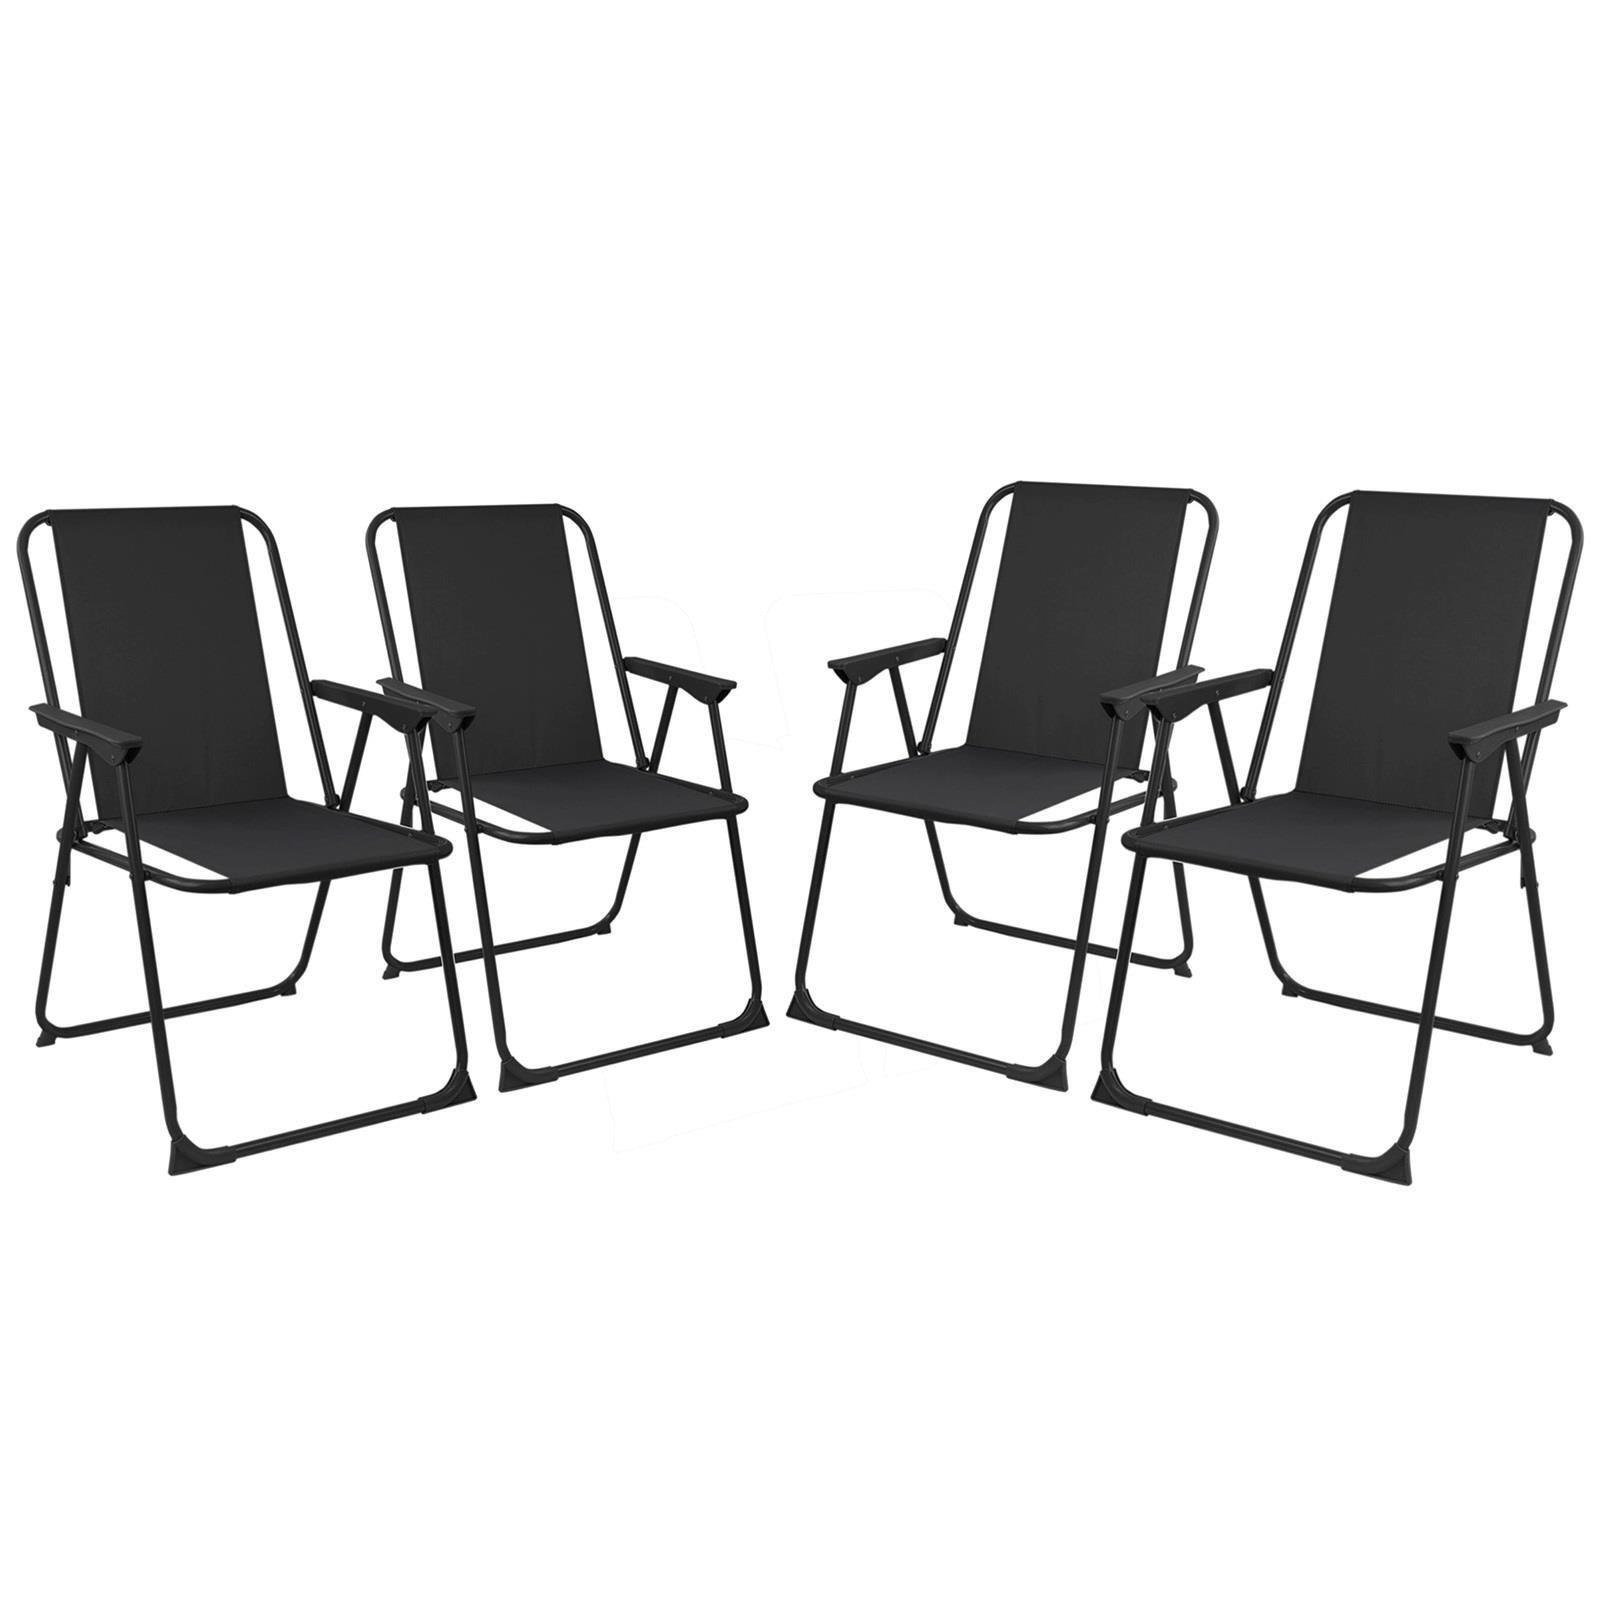 Set Of 4 Folding Garden Chair